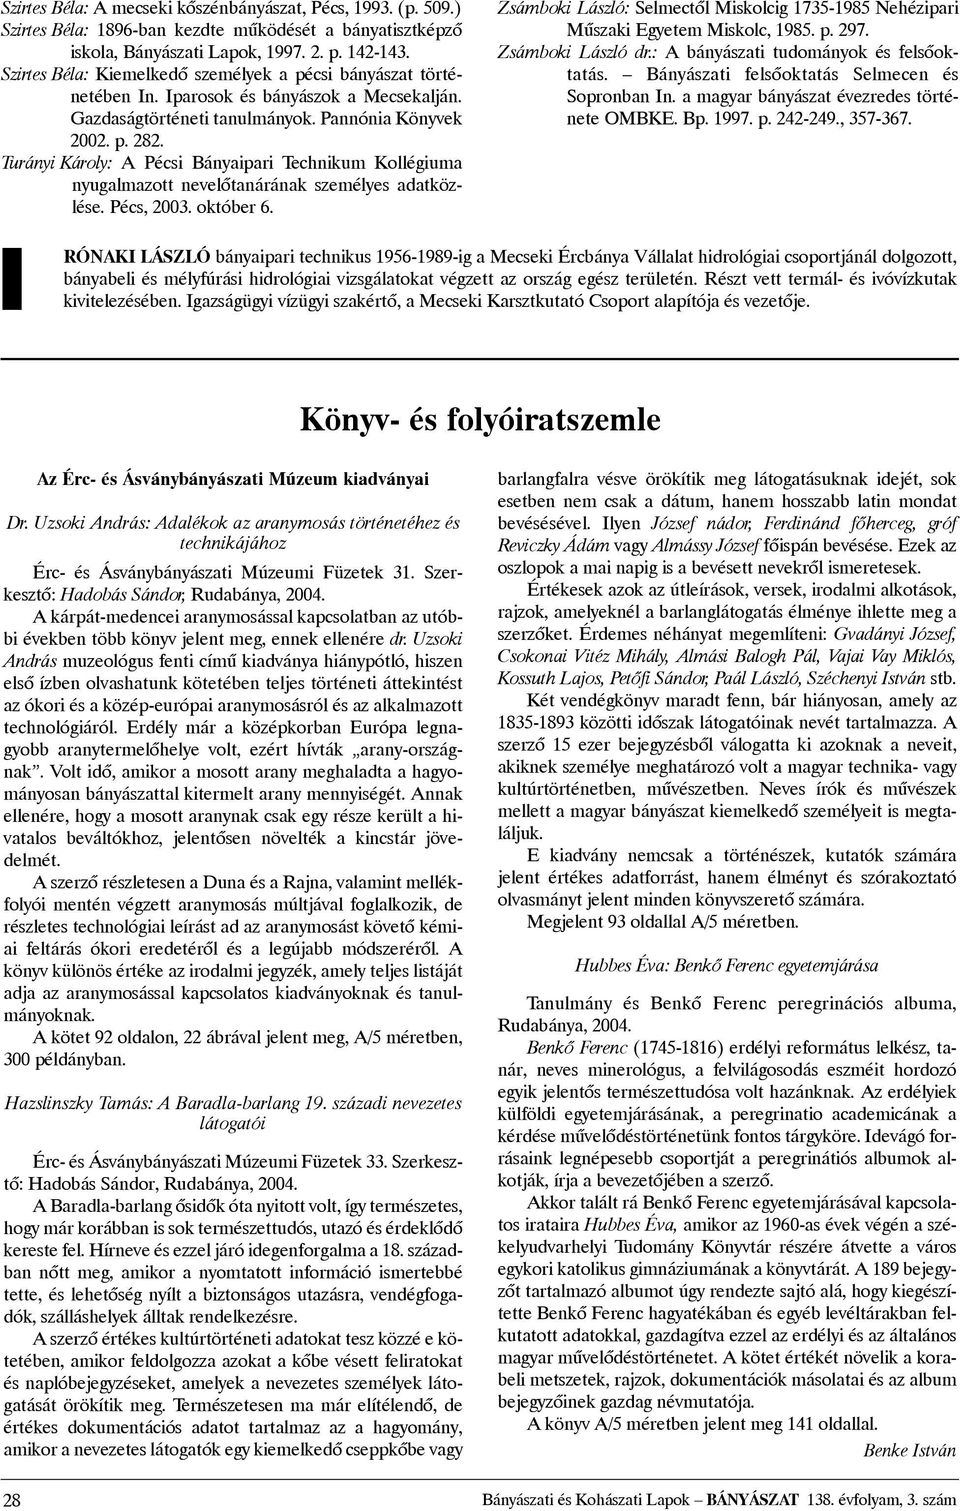 Turányi Károly: A Pécsi Bányaipari Technikum Kollégiuma nyugalmazott nevelõtanárának személyes adatközlése. Pécs, 2003. október 6.